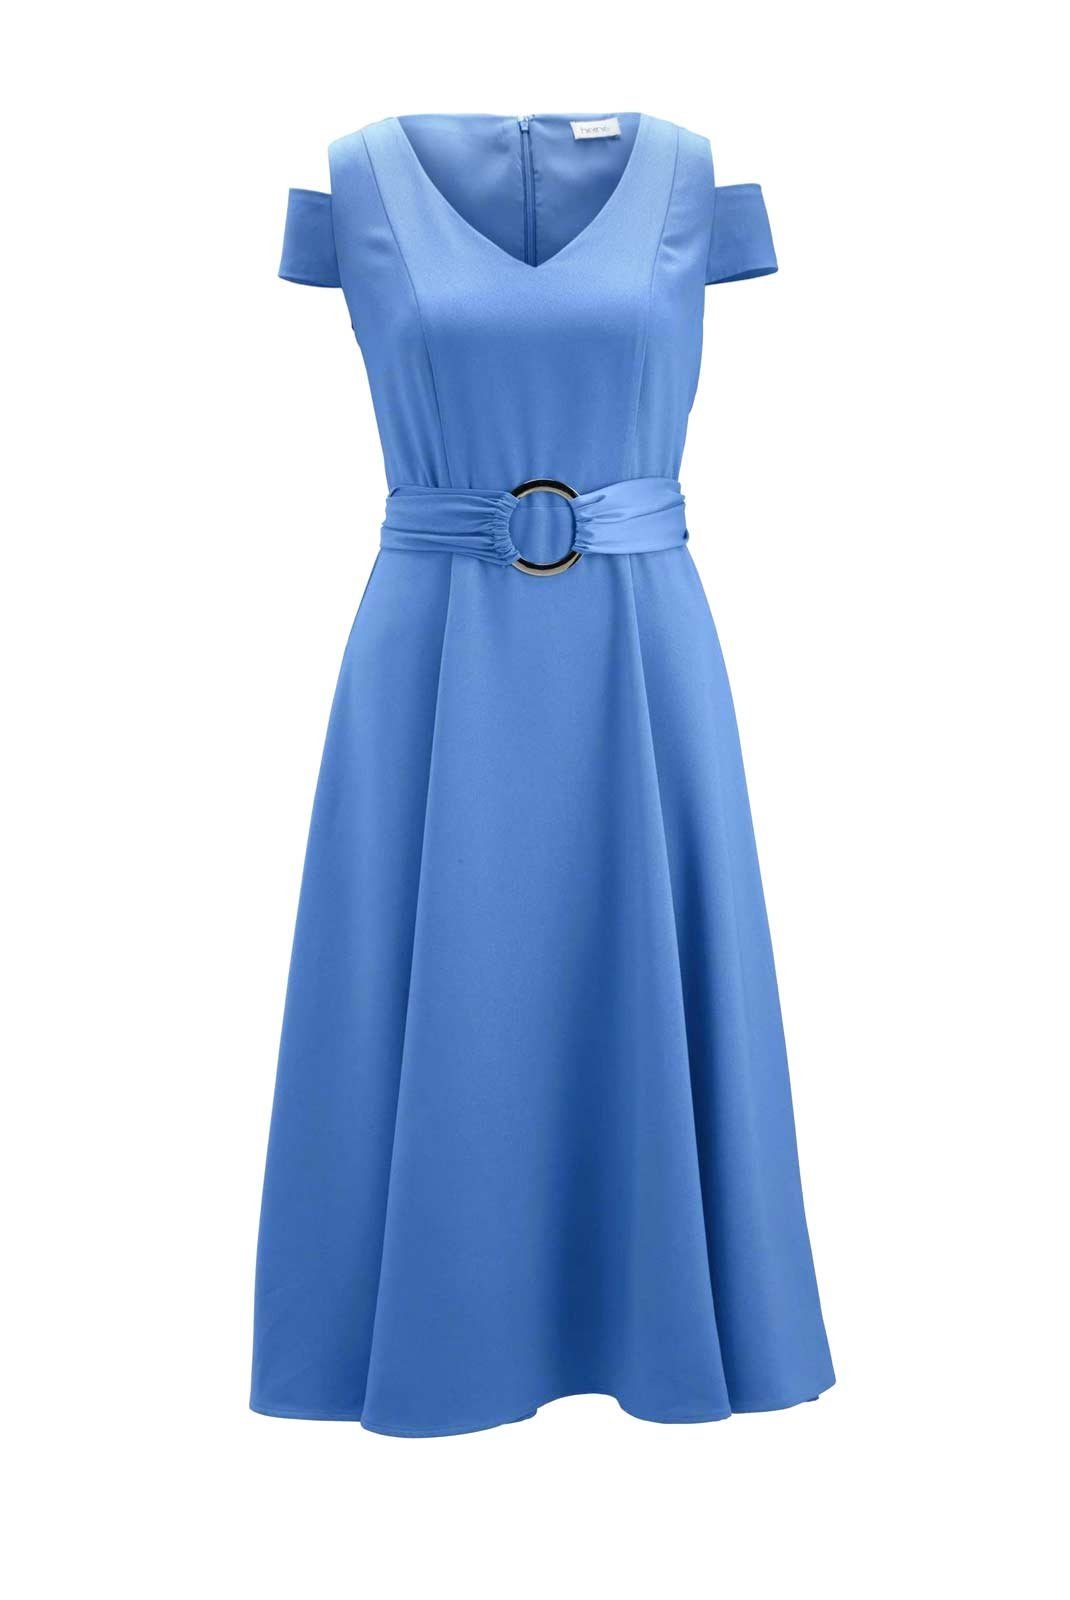 heine Shirtkleid »HEINE Damen Kleid mit Gürtel, aqua« online kaufen | OTTO